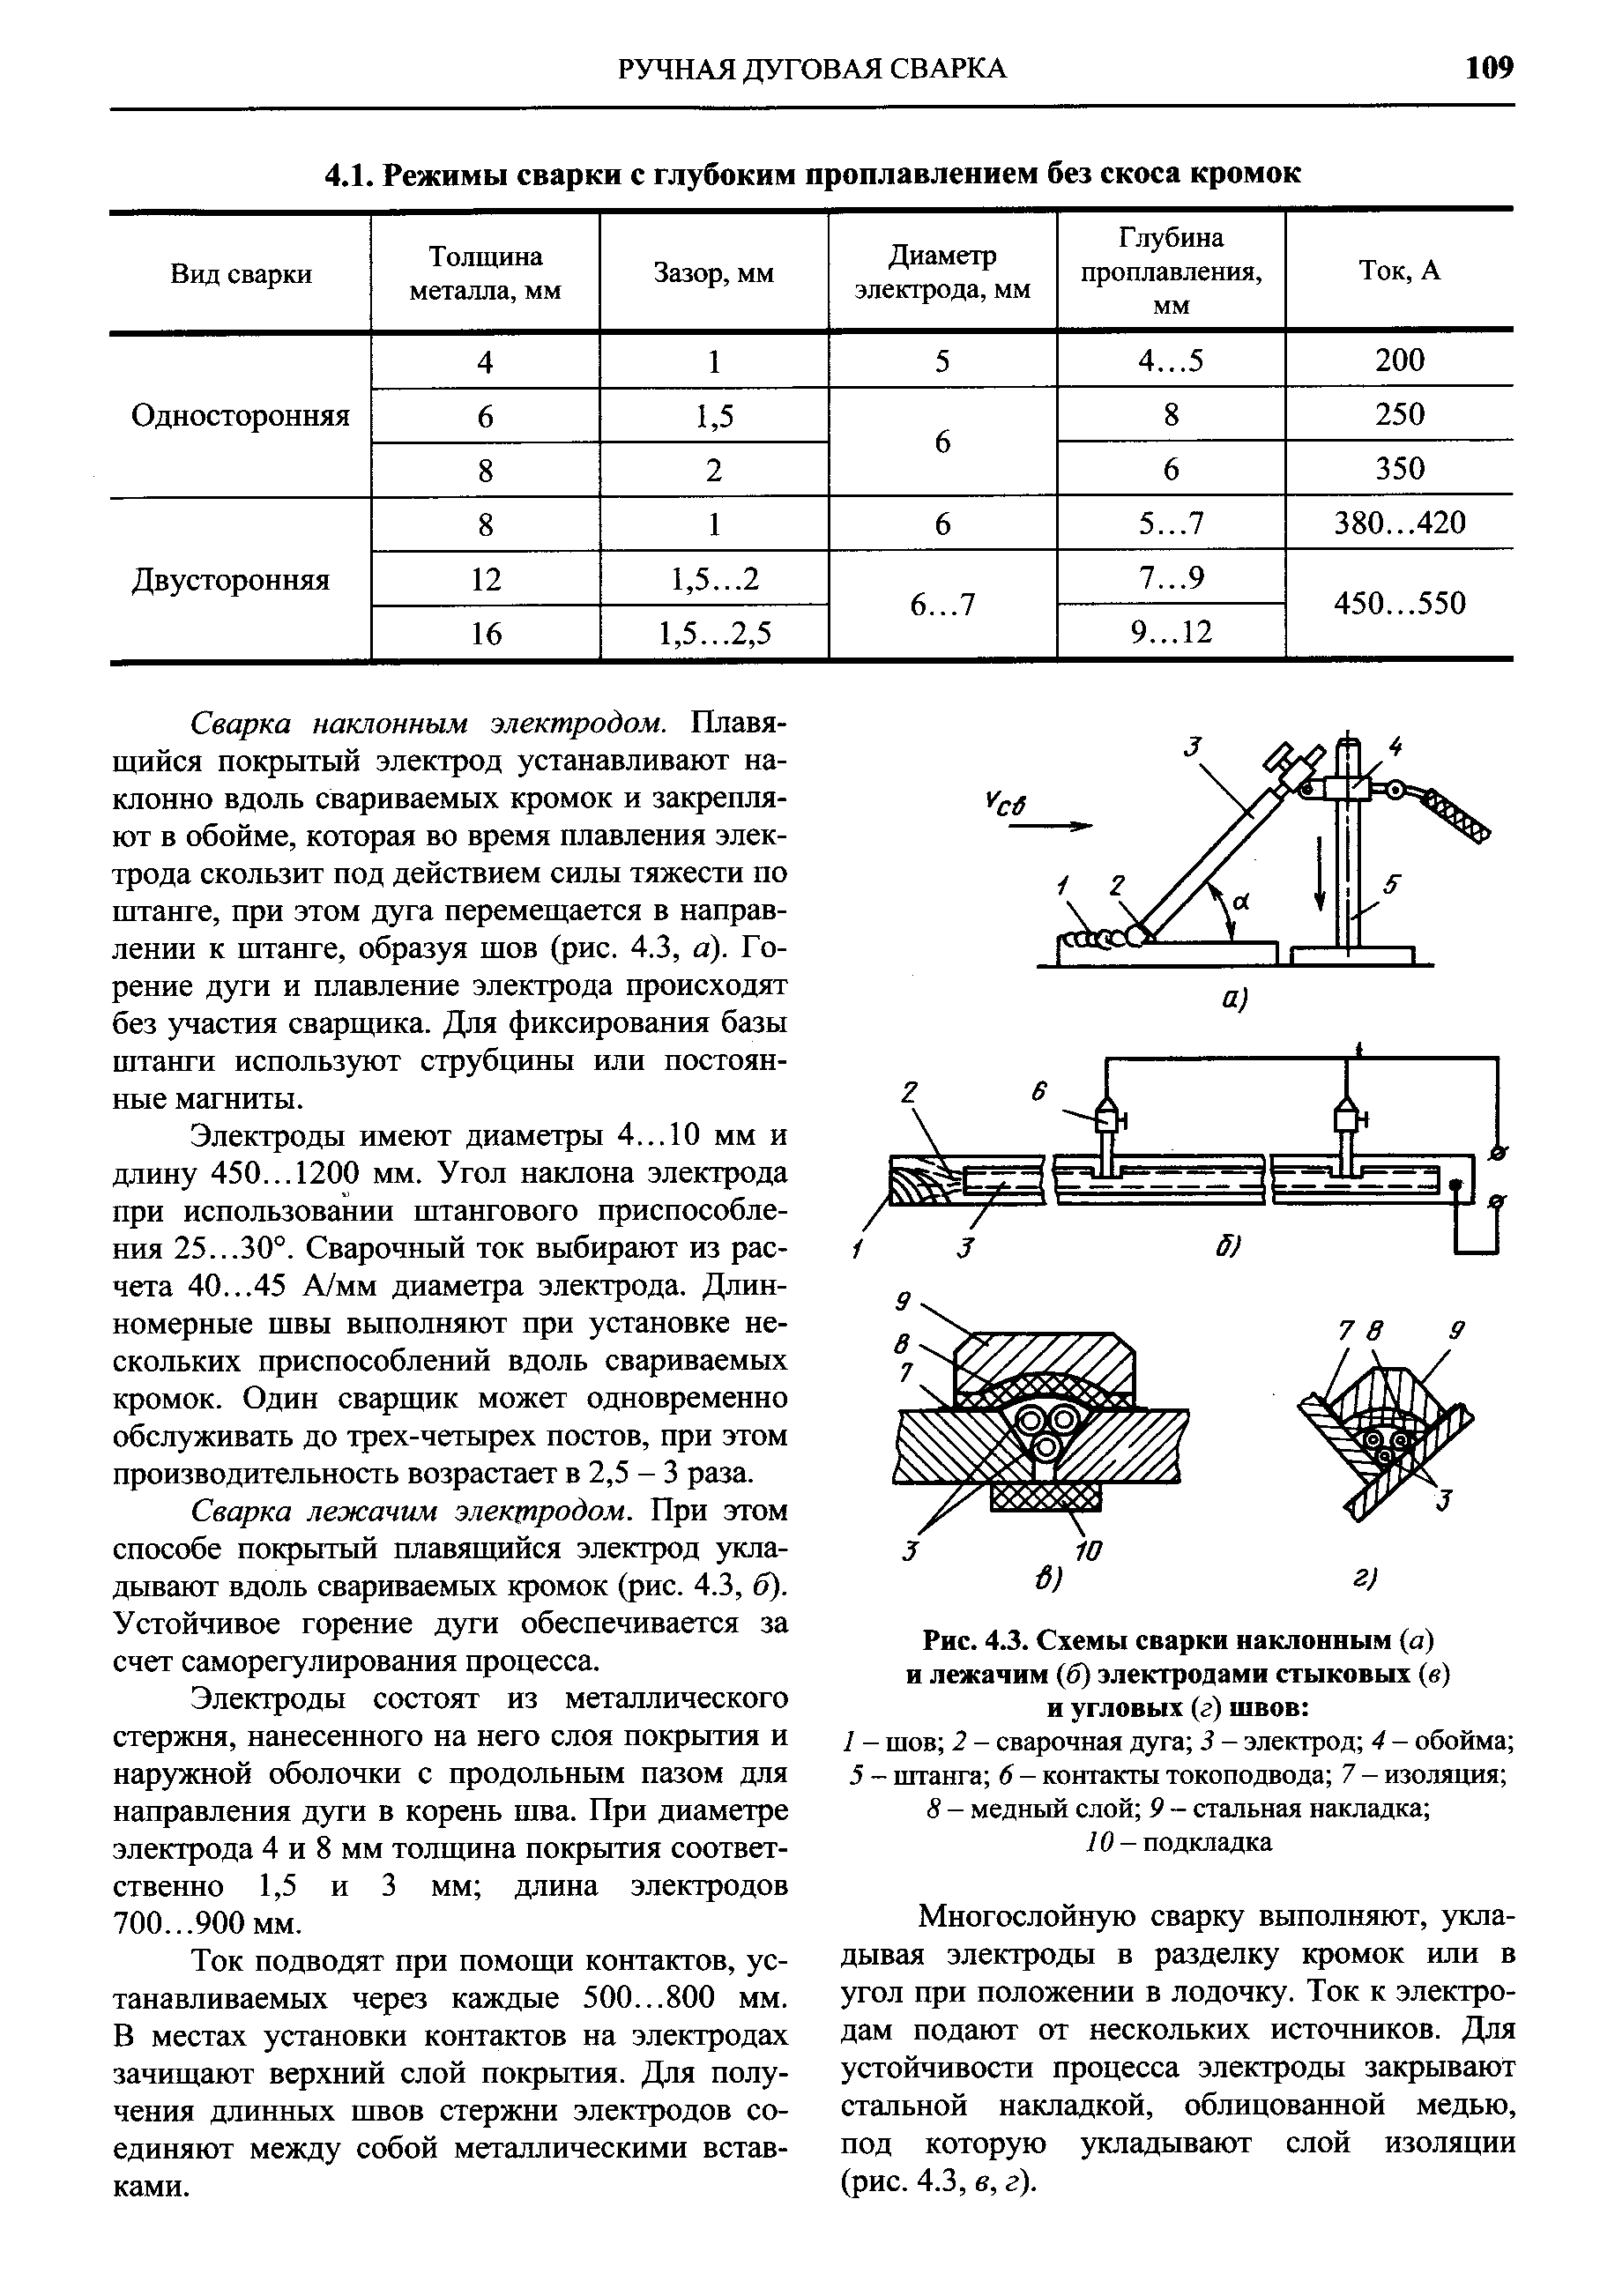 Рис. 4.3. Схемы сварки наклонным (а) и лежачим (б) электродами стыковых (в) и угловых (г) швов 
